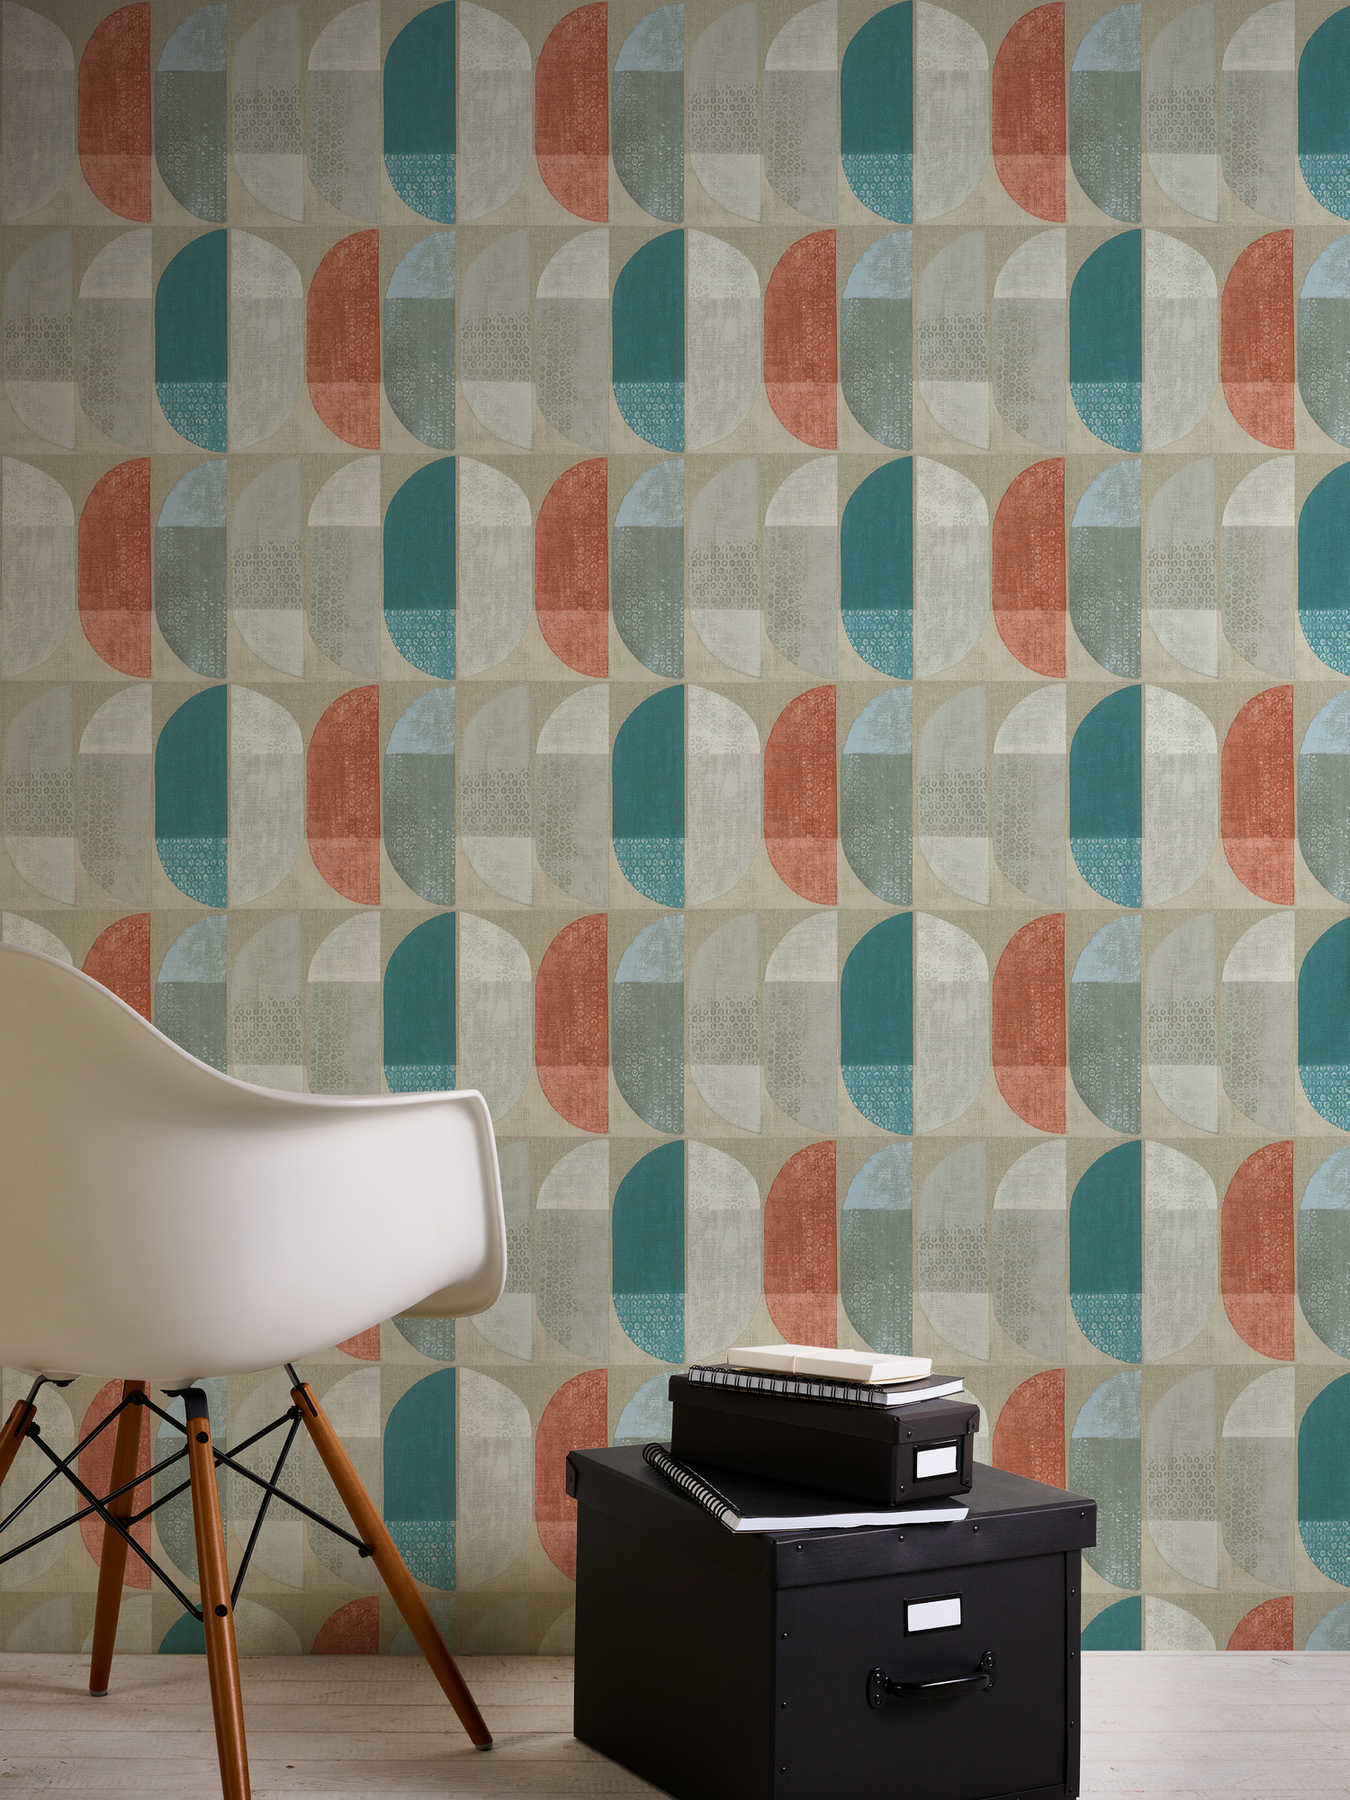             Wallpaper geometric retro pattern, Scandinavian style - beige, red, blue
        